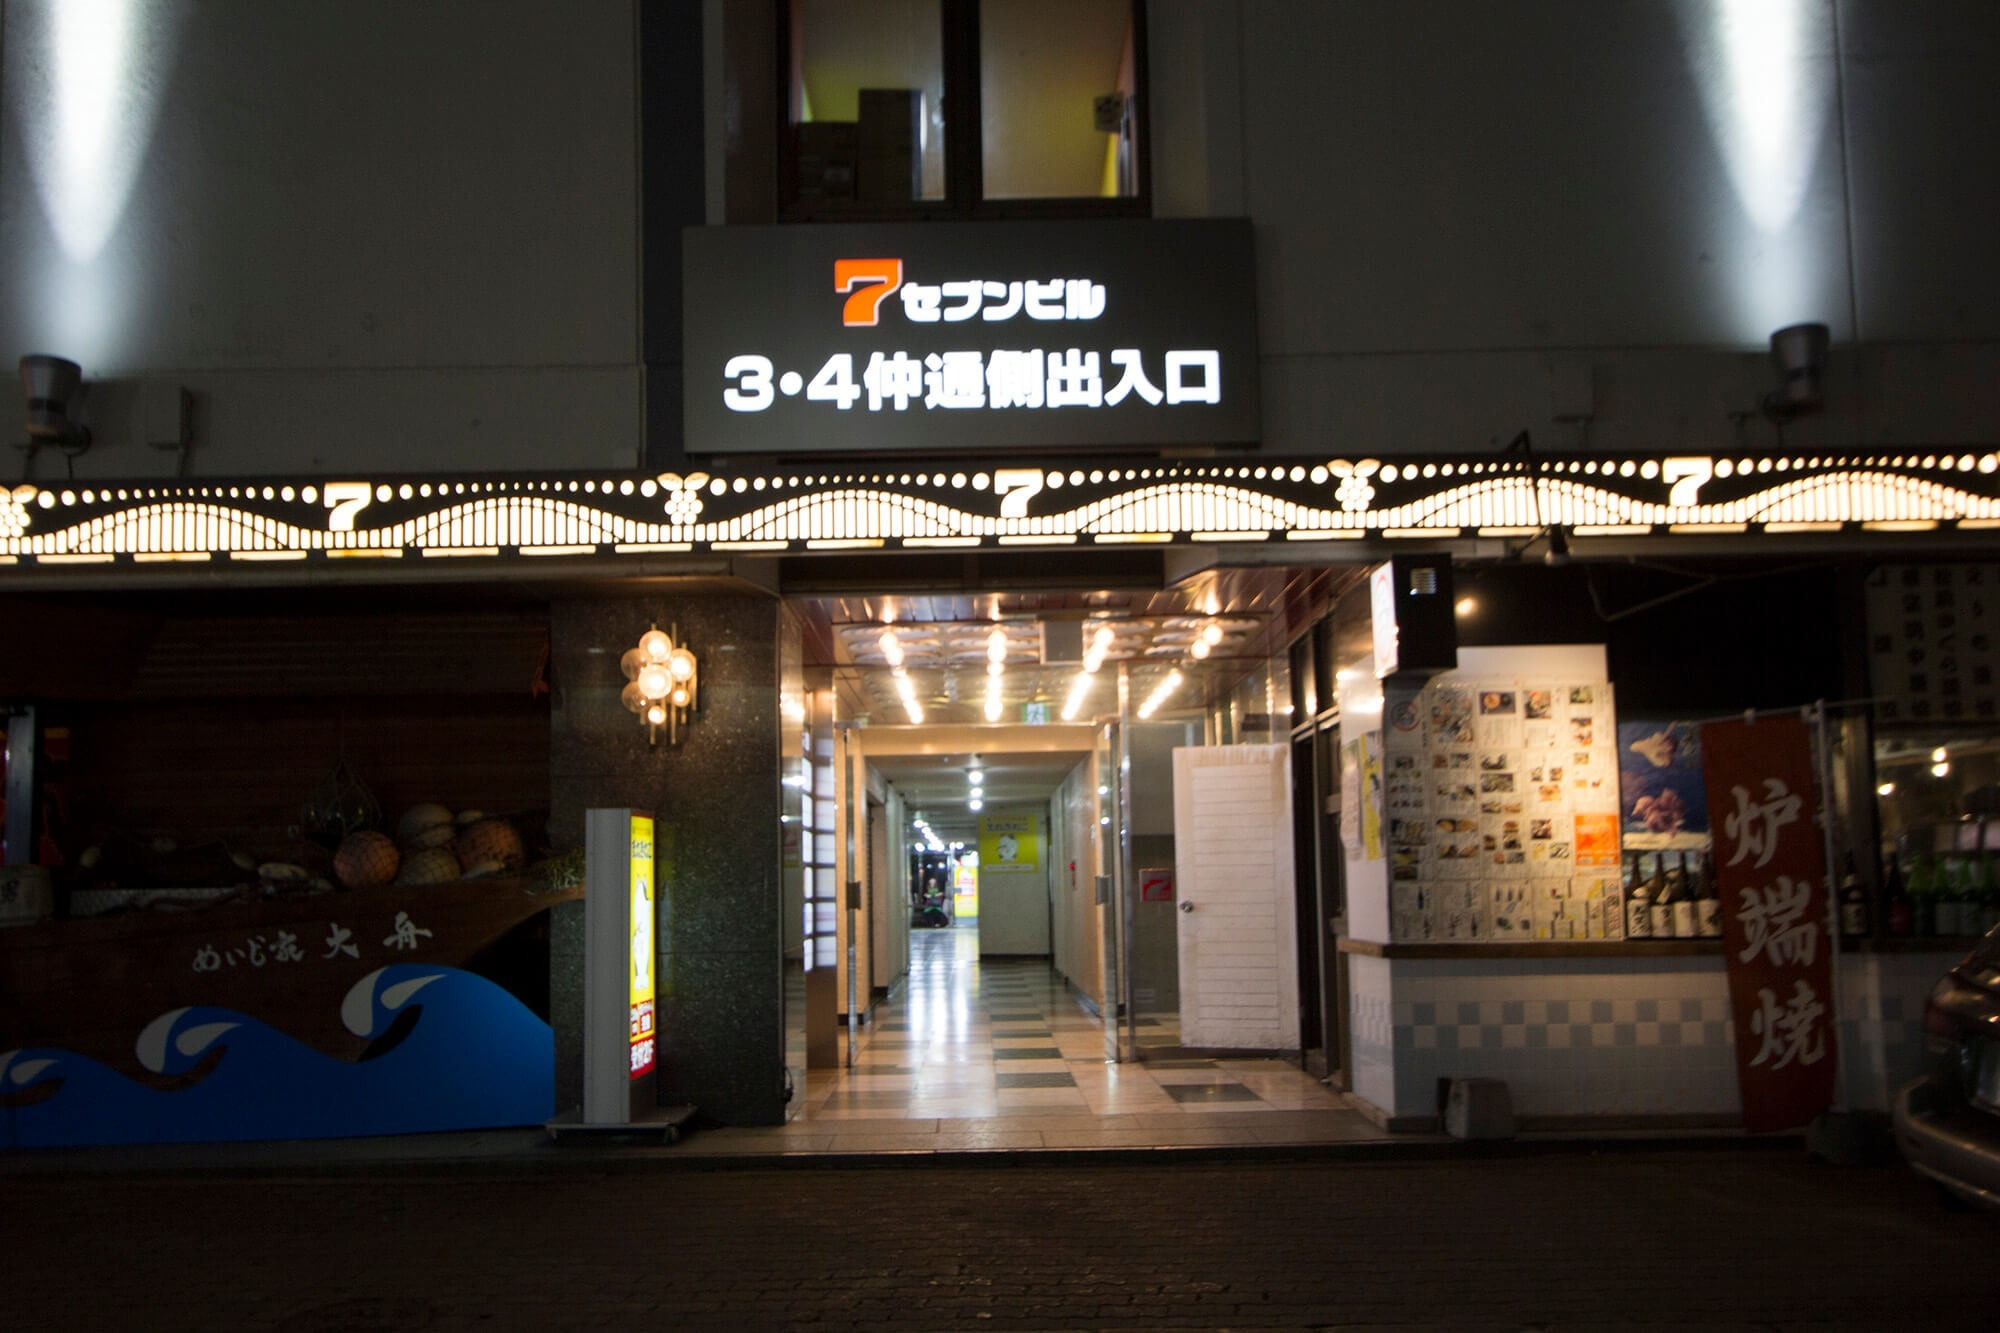 02【Go to Asahikawa】旭川駅近MAX10 FreeWi-Fi 繫華 三六 コンビニ